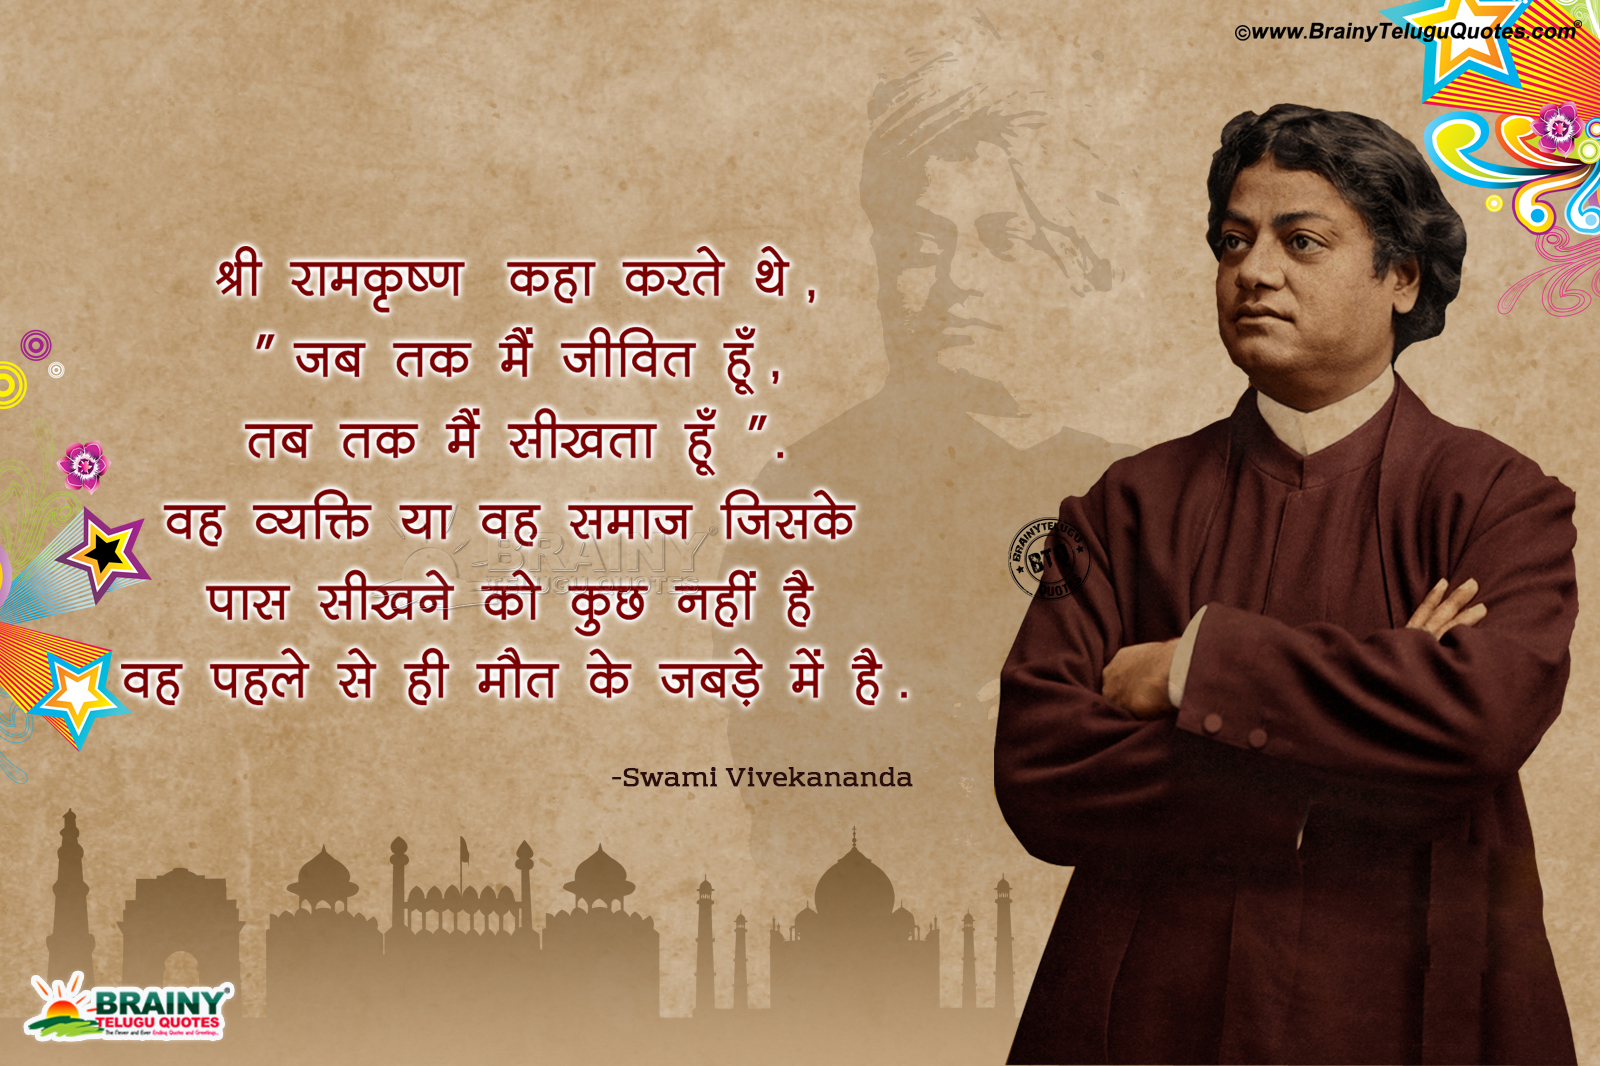 Swami Vivekananda Quotes Hd Wallpapers In Hindi, Motivational - Swami